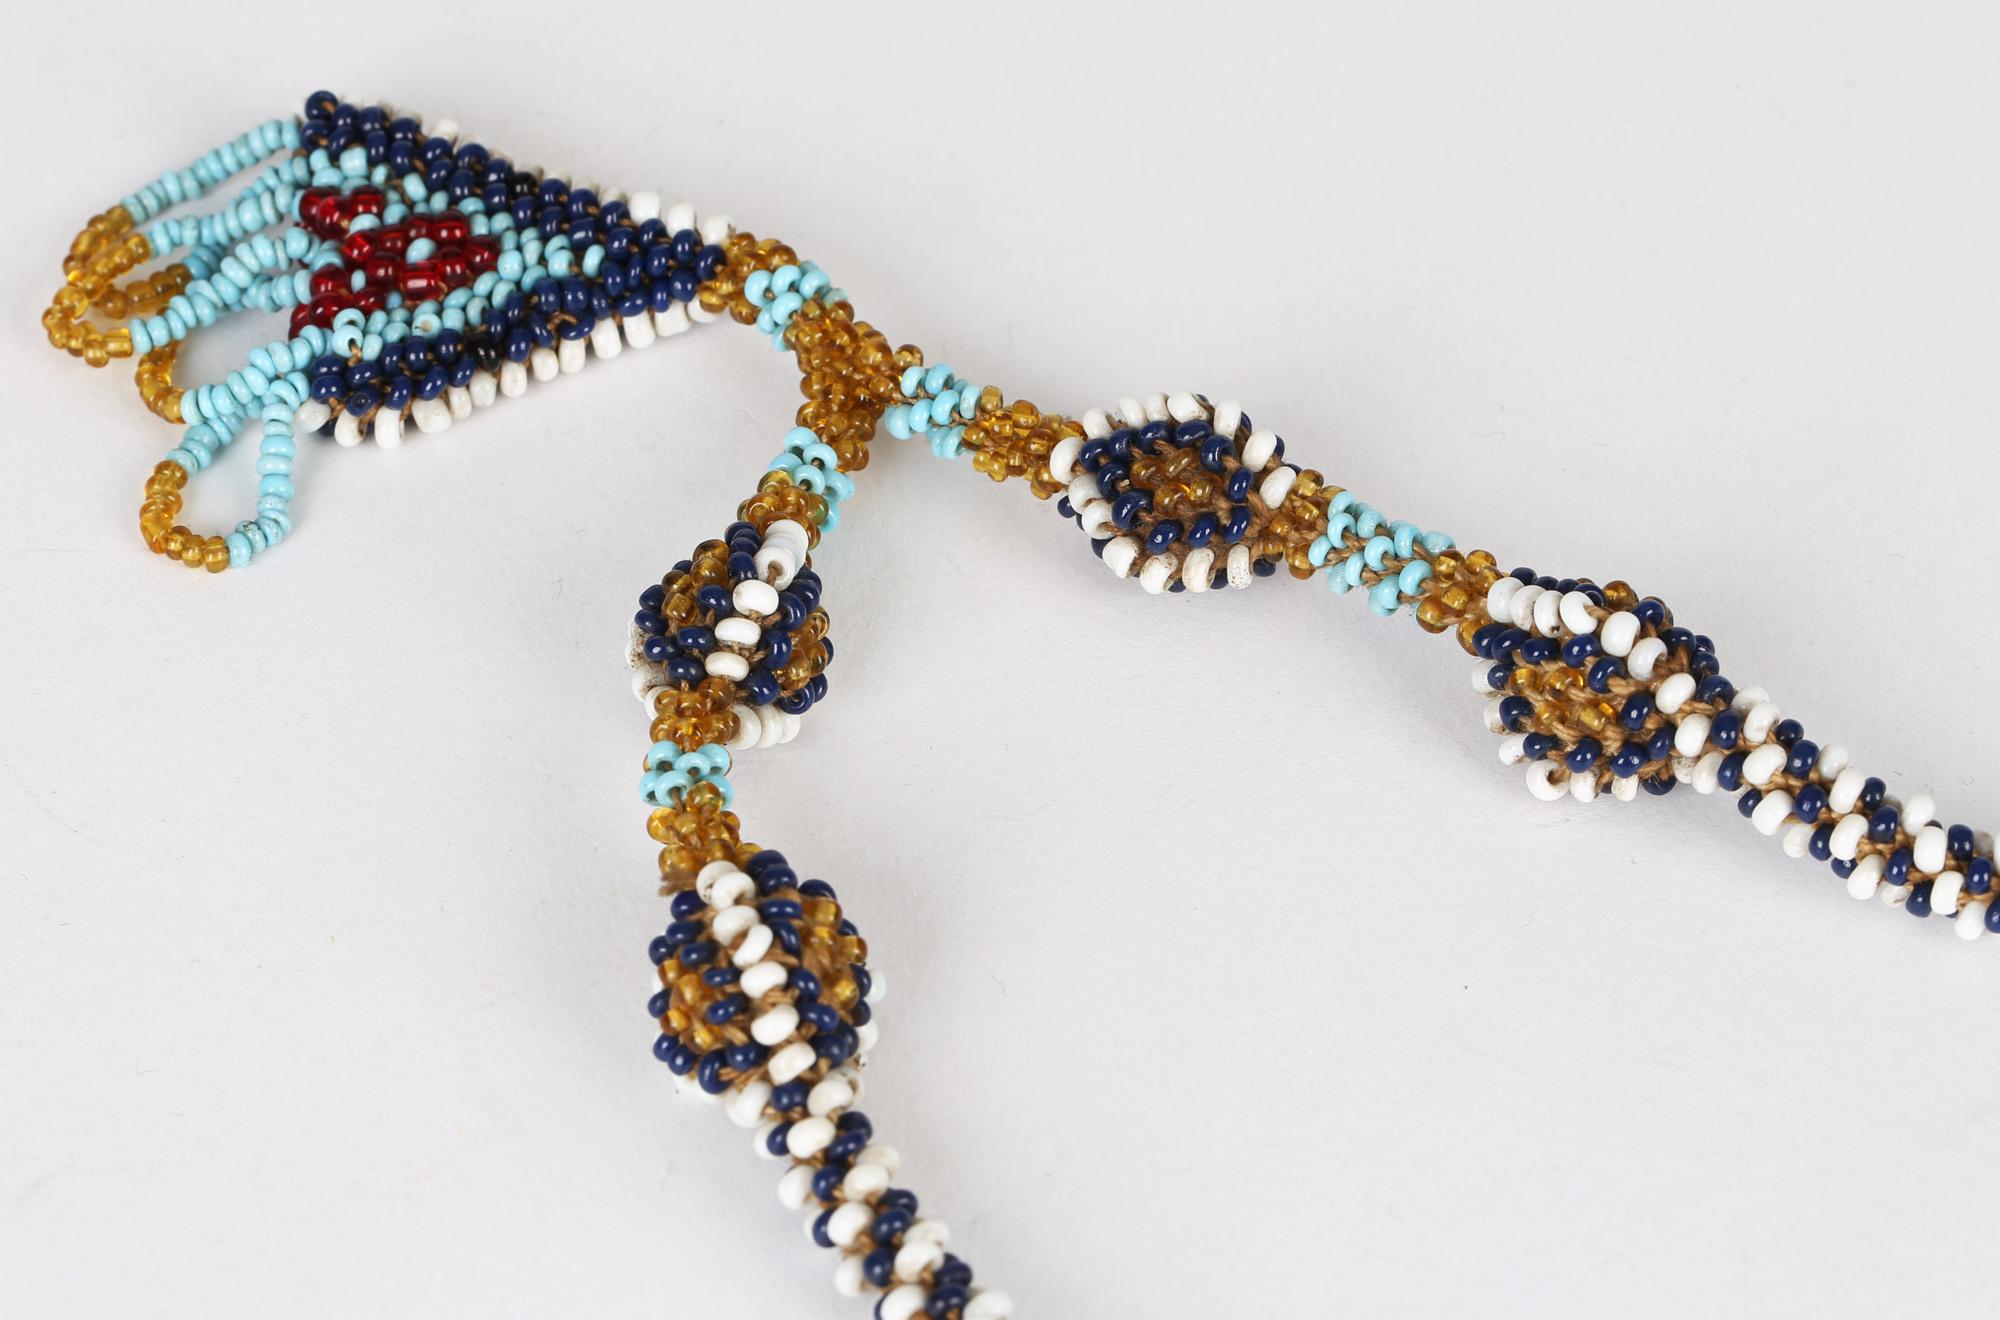 Eine außergewöhnlich gute Qualität türkischer Kriegsgefangenen-Glasperlen-Amulett-Halskette aus dem Ersten Weltkrieg 1914-1919. Diese Stücke wurden von türkischen Kriegsgefangenen angefertigt, die in Gallipoli gefangen genommen und oft von den